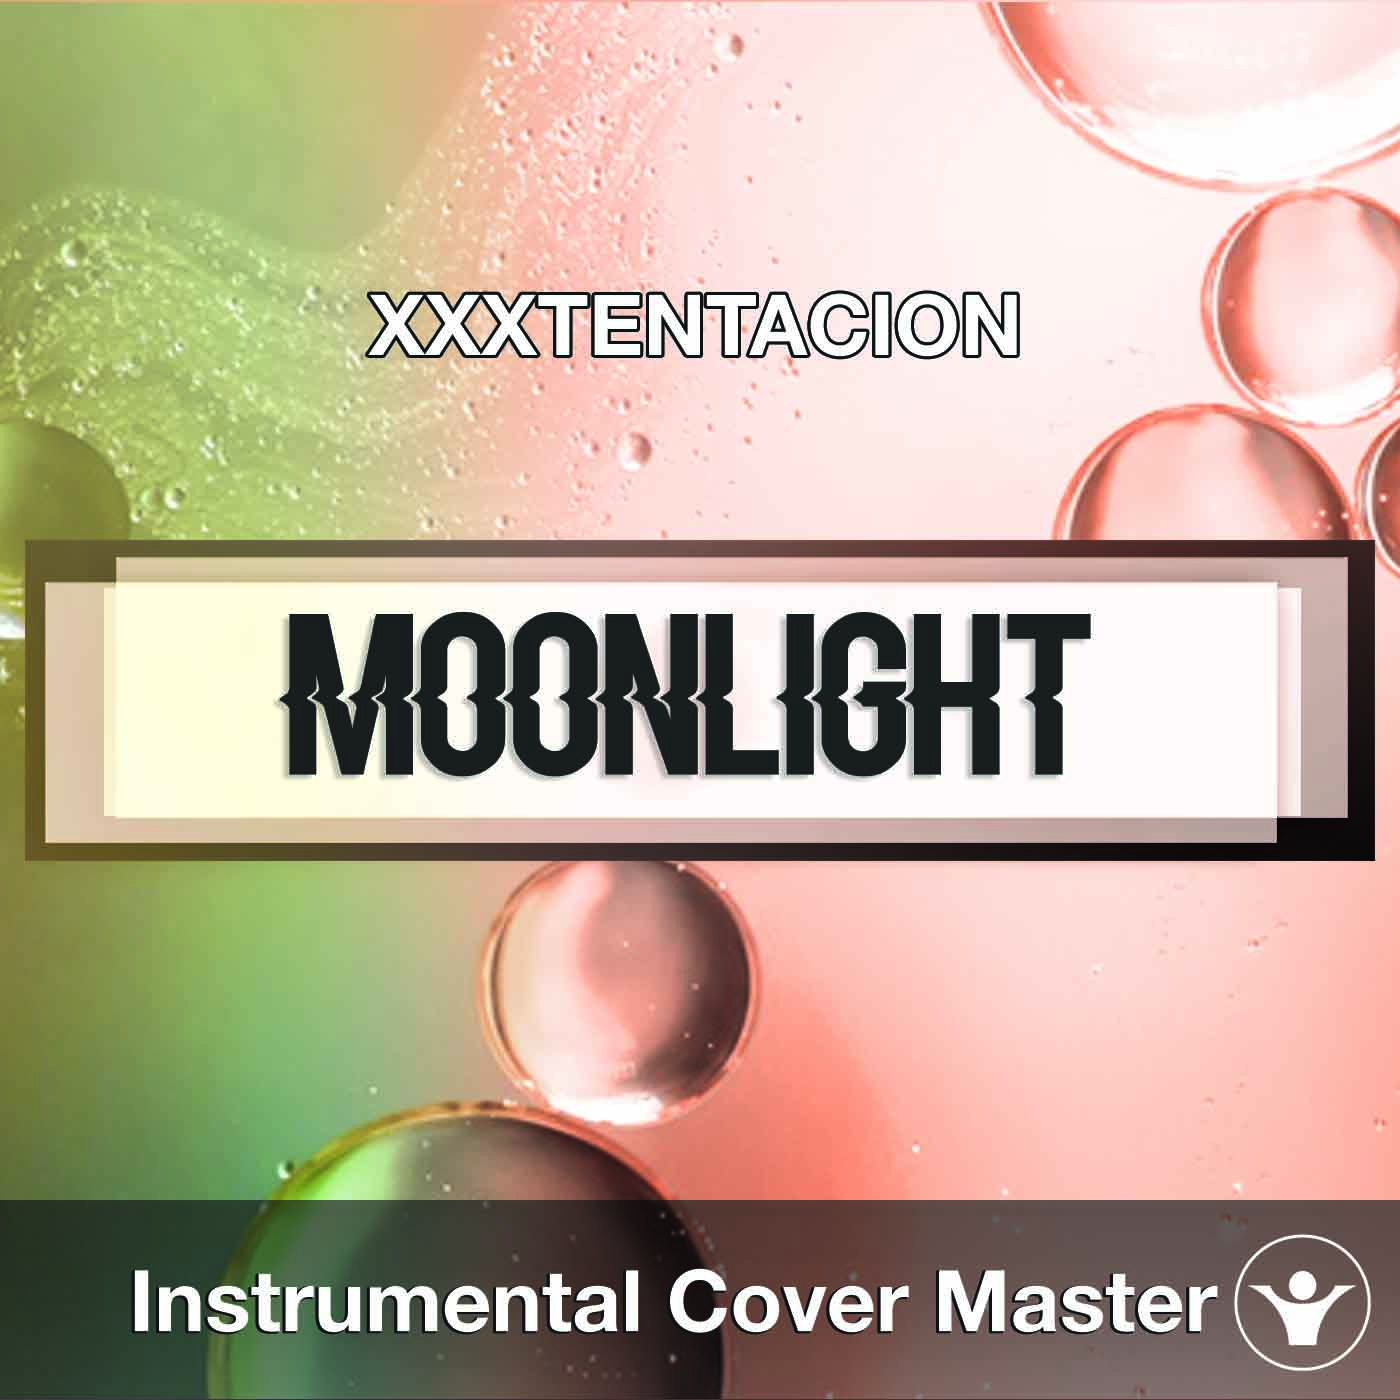 xxxtentacion moonlight playlist